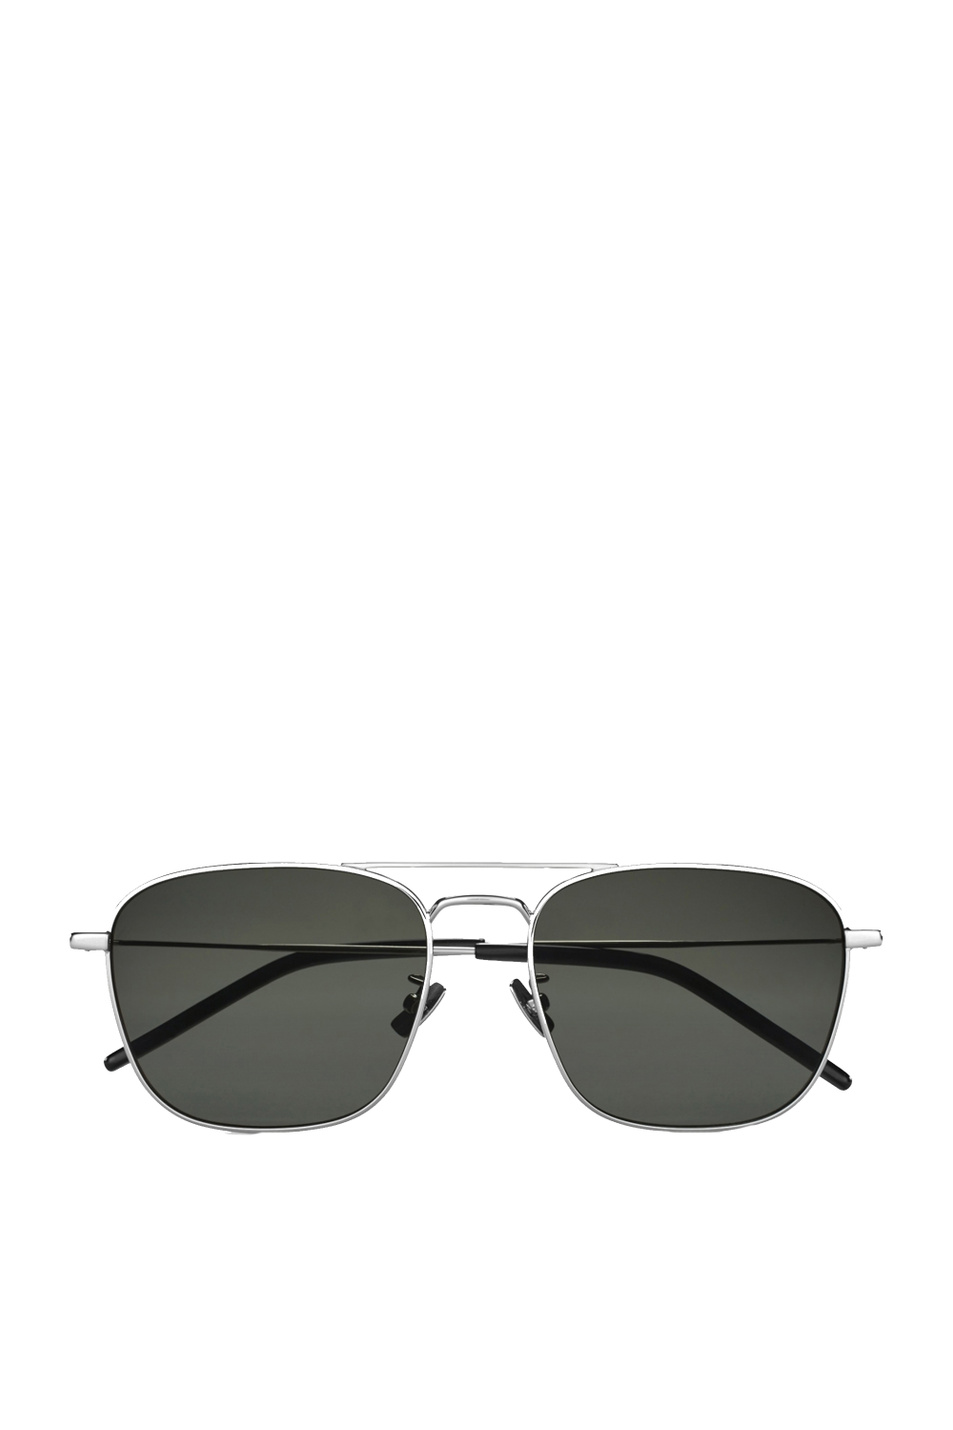 Saint Laurent Солнцезащитные очки SL 309 (цвет ), артикул SL 309 | Фото 1